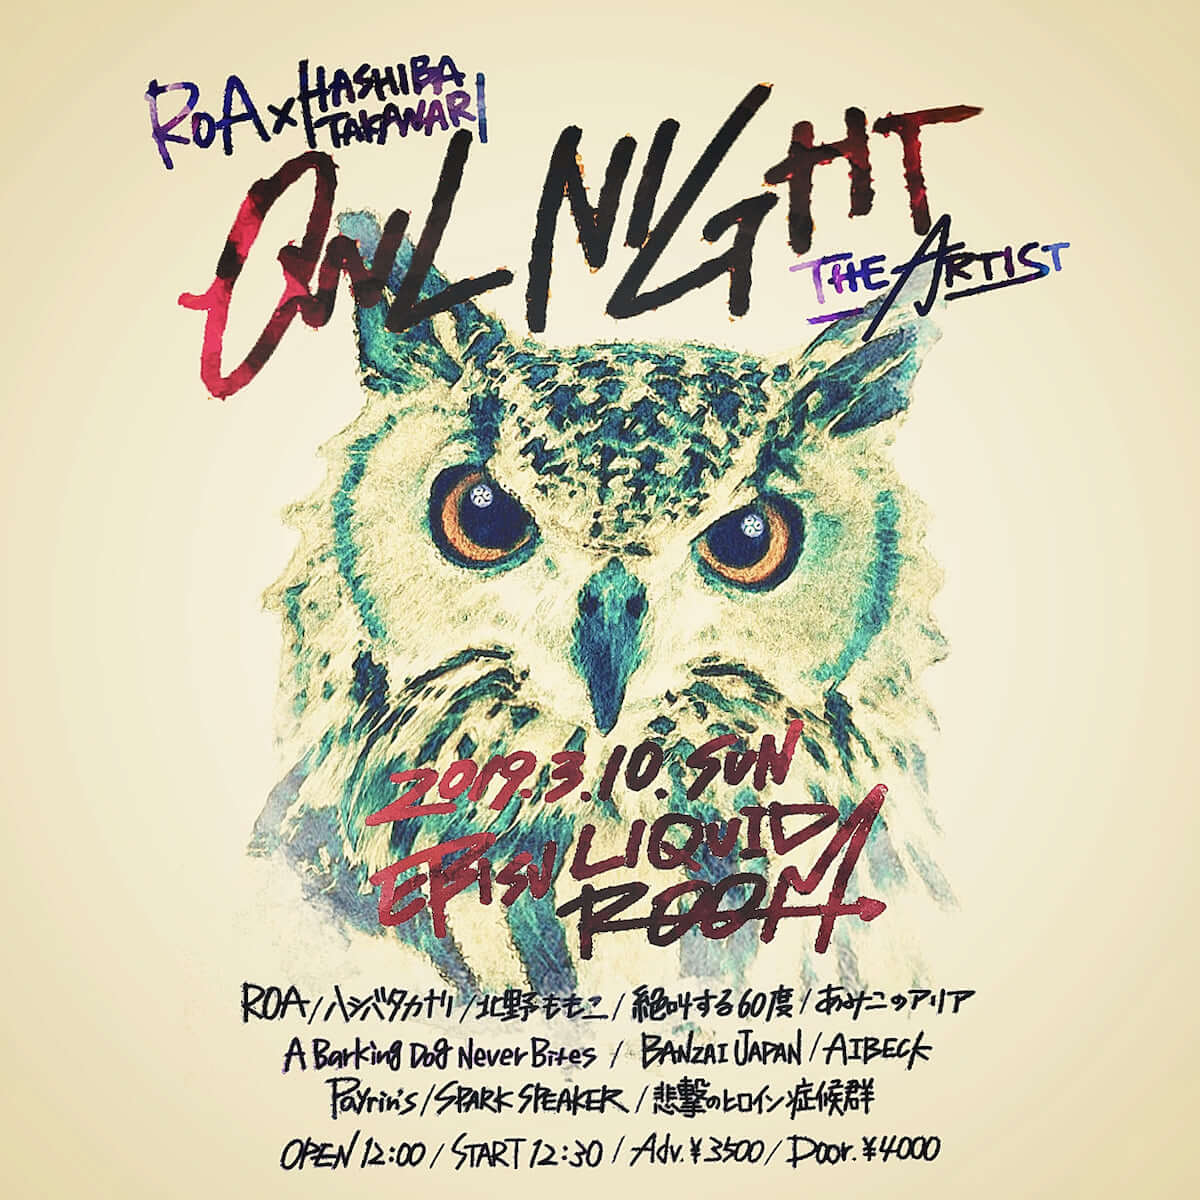 ROAとハシバタカナリ共催「OWL NIGHT -THE ARTIST-」に北野ももこ、悲撃のヒロイン症候群ら計10組が登場 music190226-roa-hashibatakanari-2-1200x1200